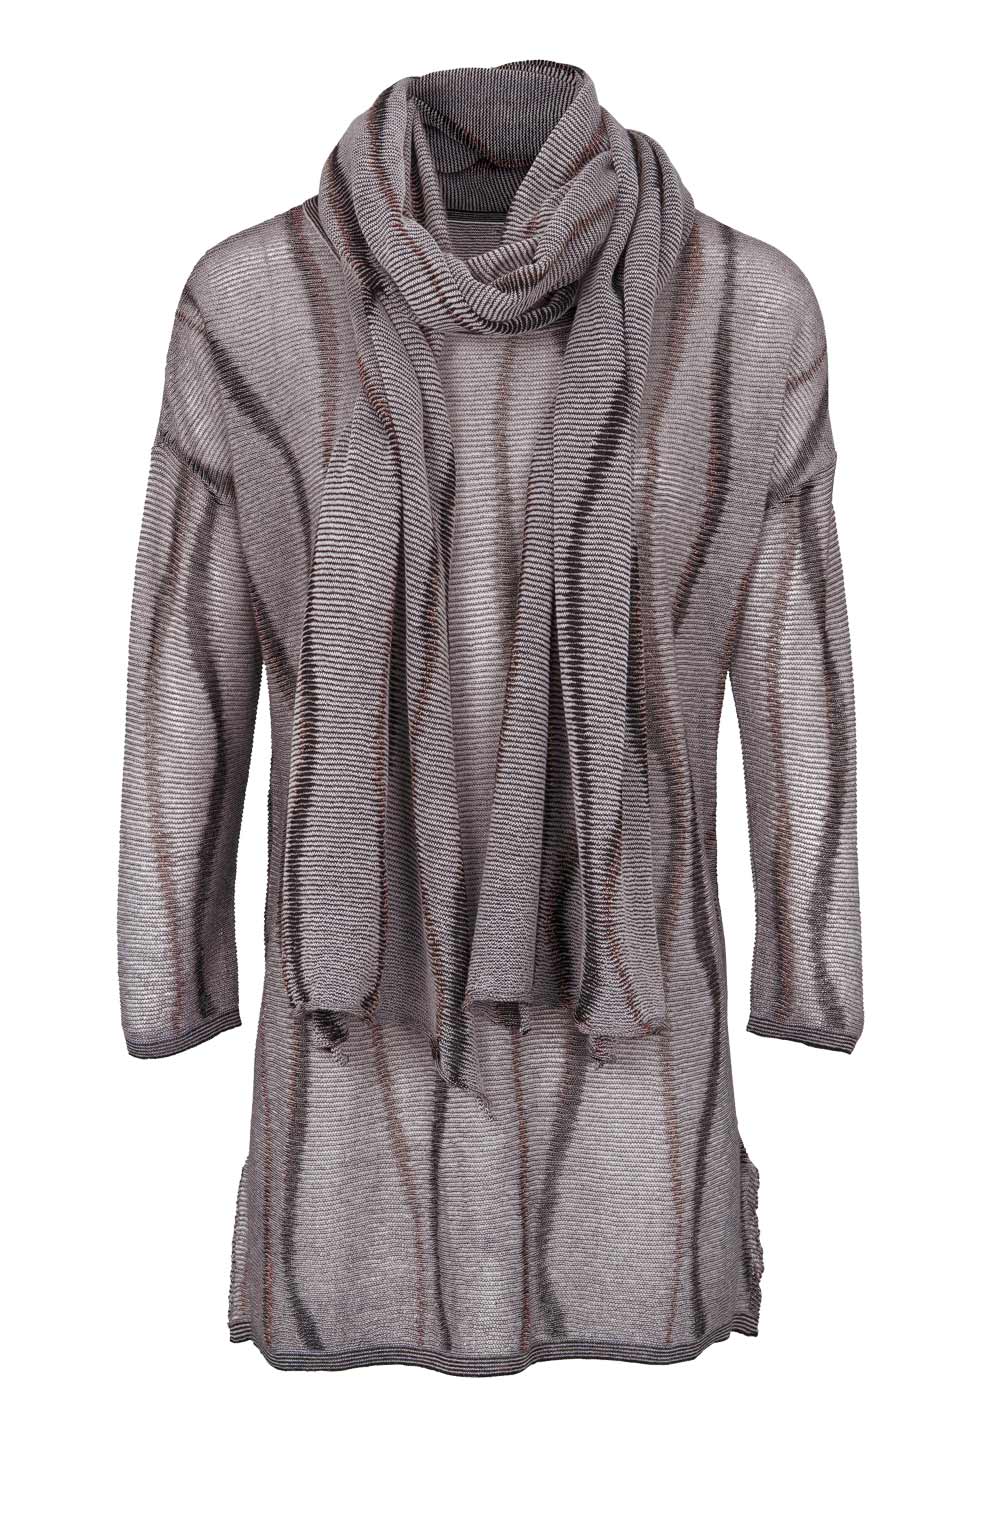 HEINE Damen Pullover + Schal, grau-bronze